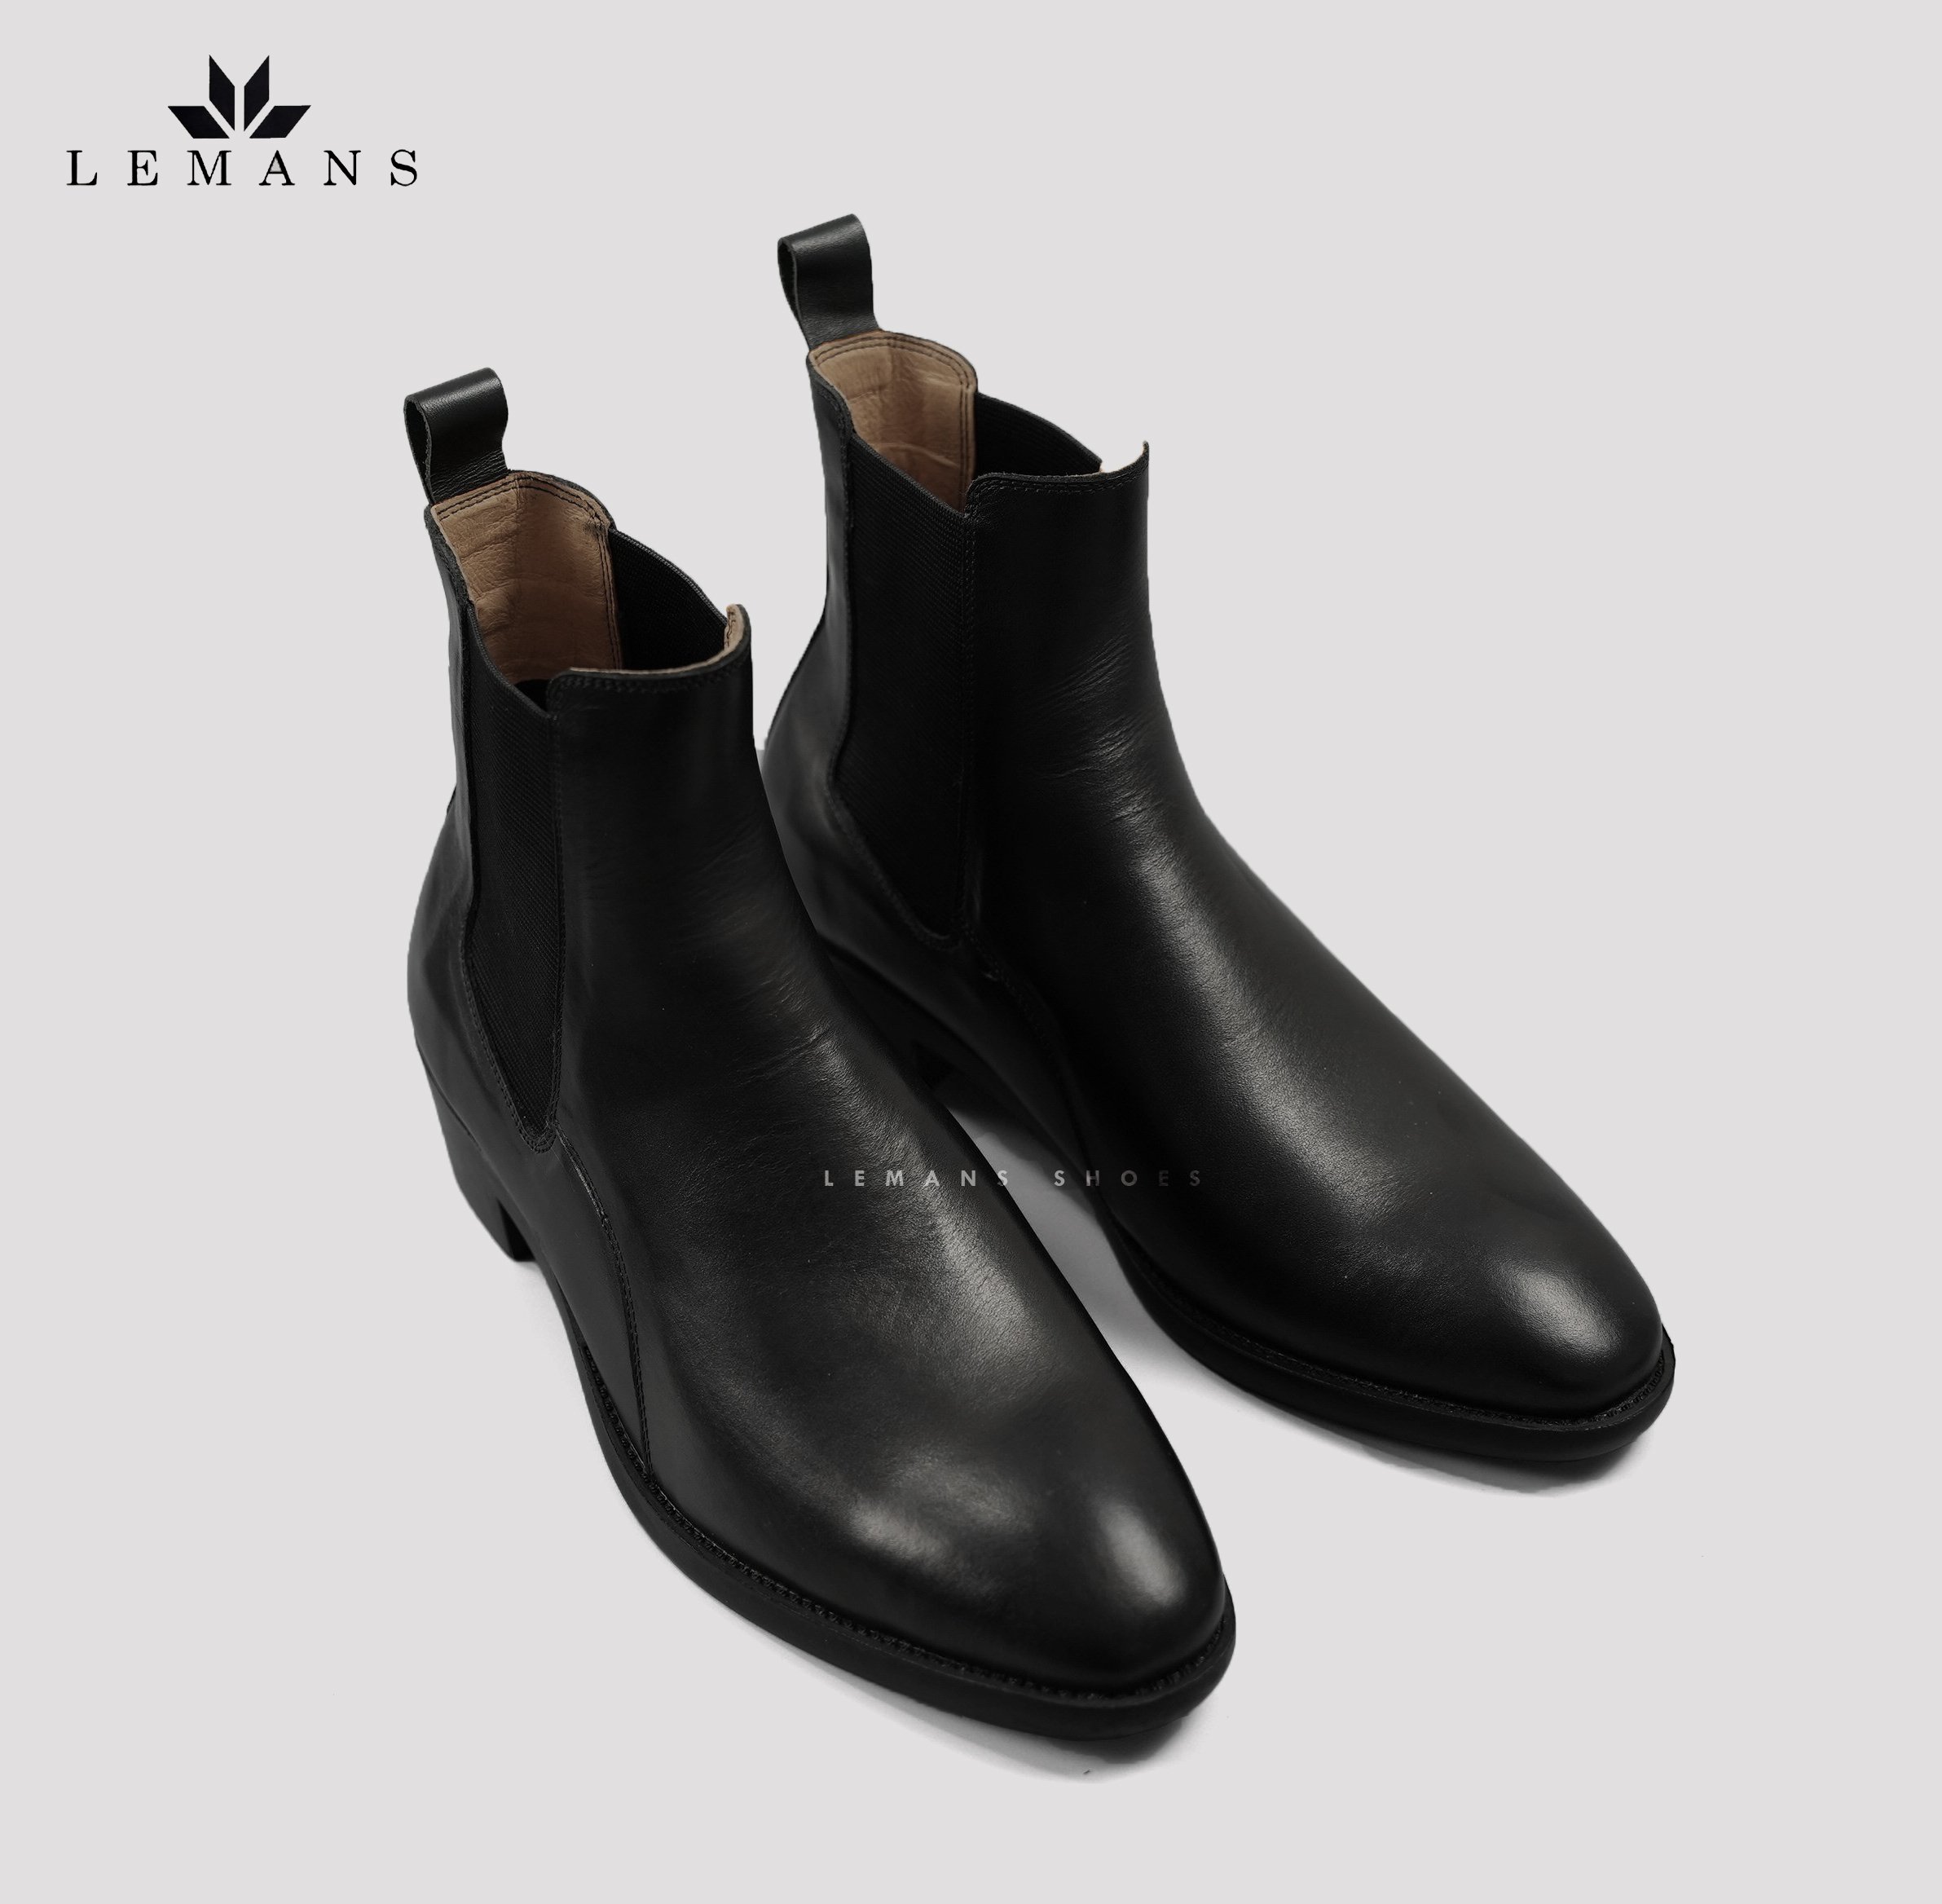 [CHELSEA CLASSIC] Giày da nhập khẩu Chelsea Boots LeMans CB04 mũi nhọn, tăng cao 5cm, bảo hành 12-24 tháng